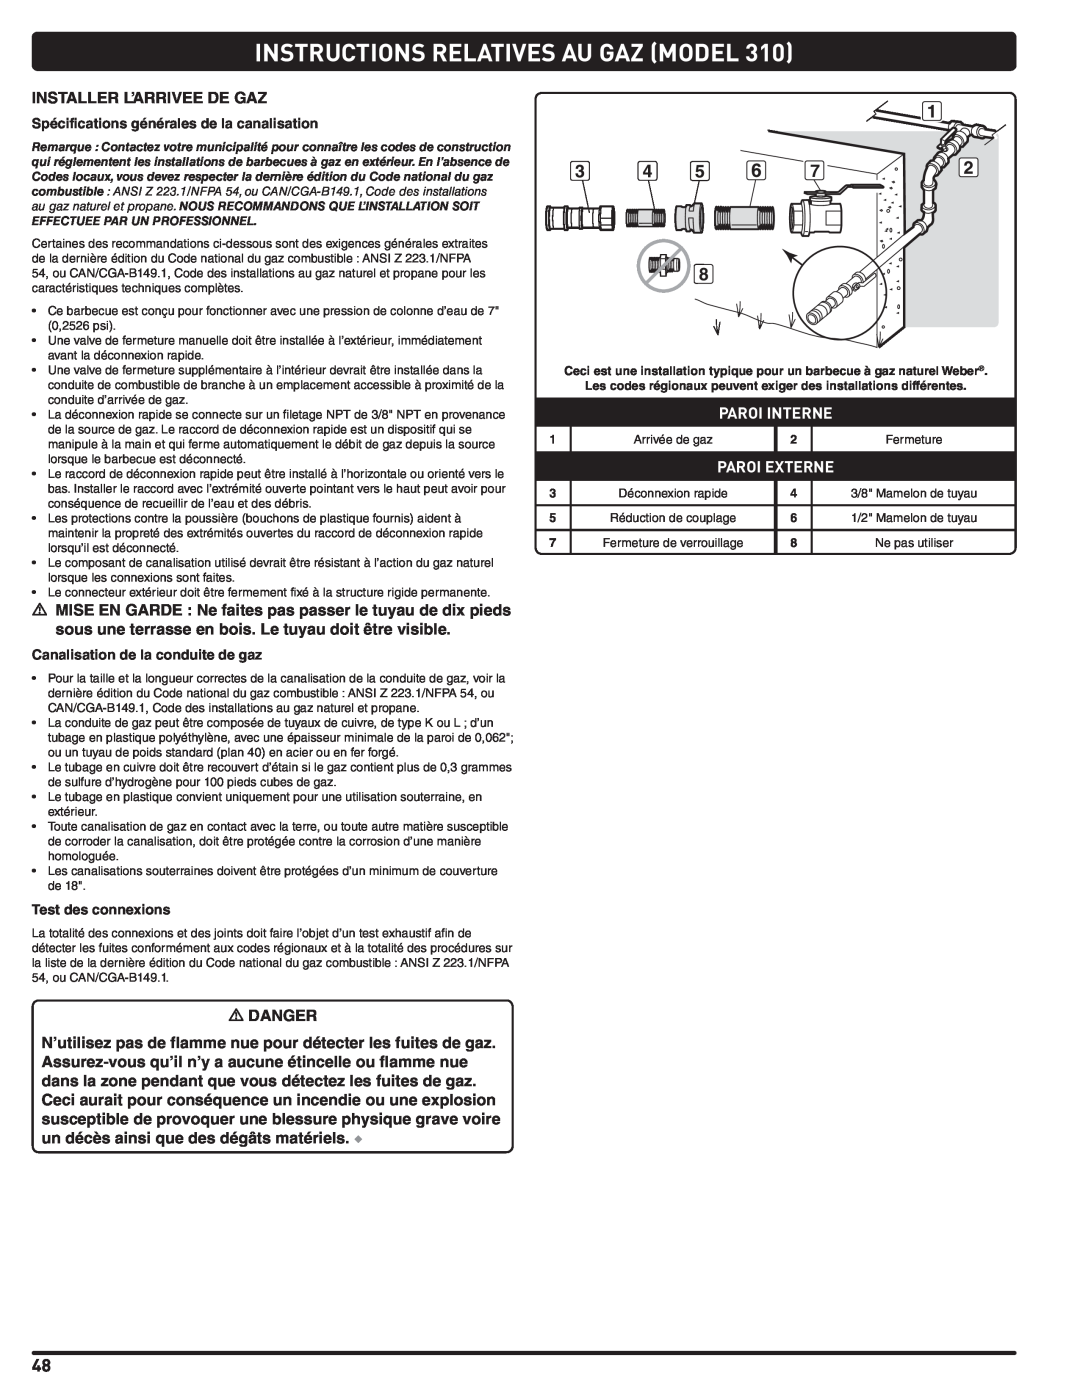 Weber 56515 Instructions Relatives Au Gaz Model, Paroi Interne, Paroi Externe, Spécifications générales de la canalisation 